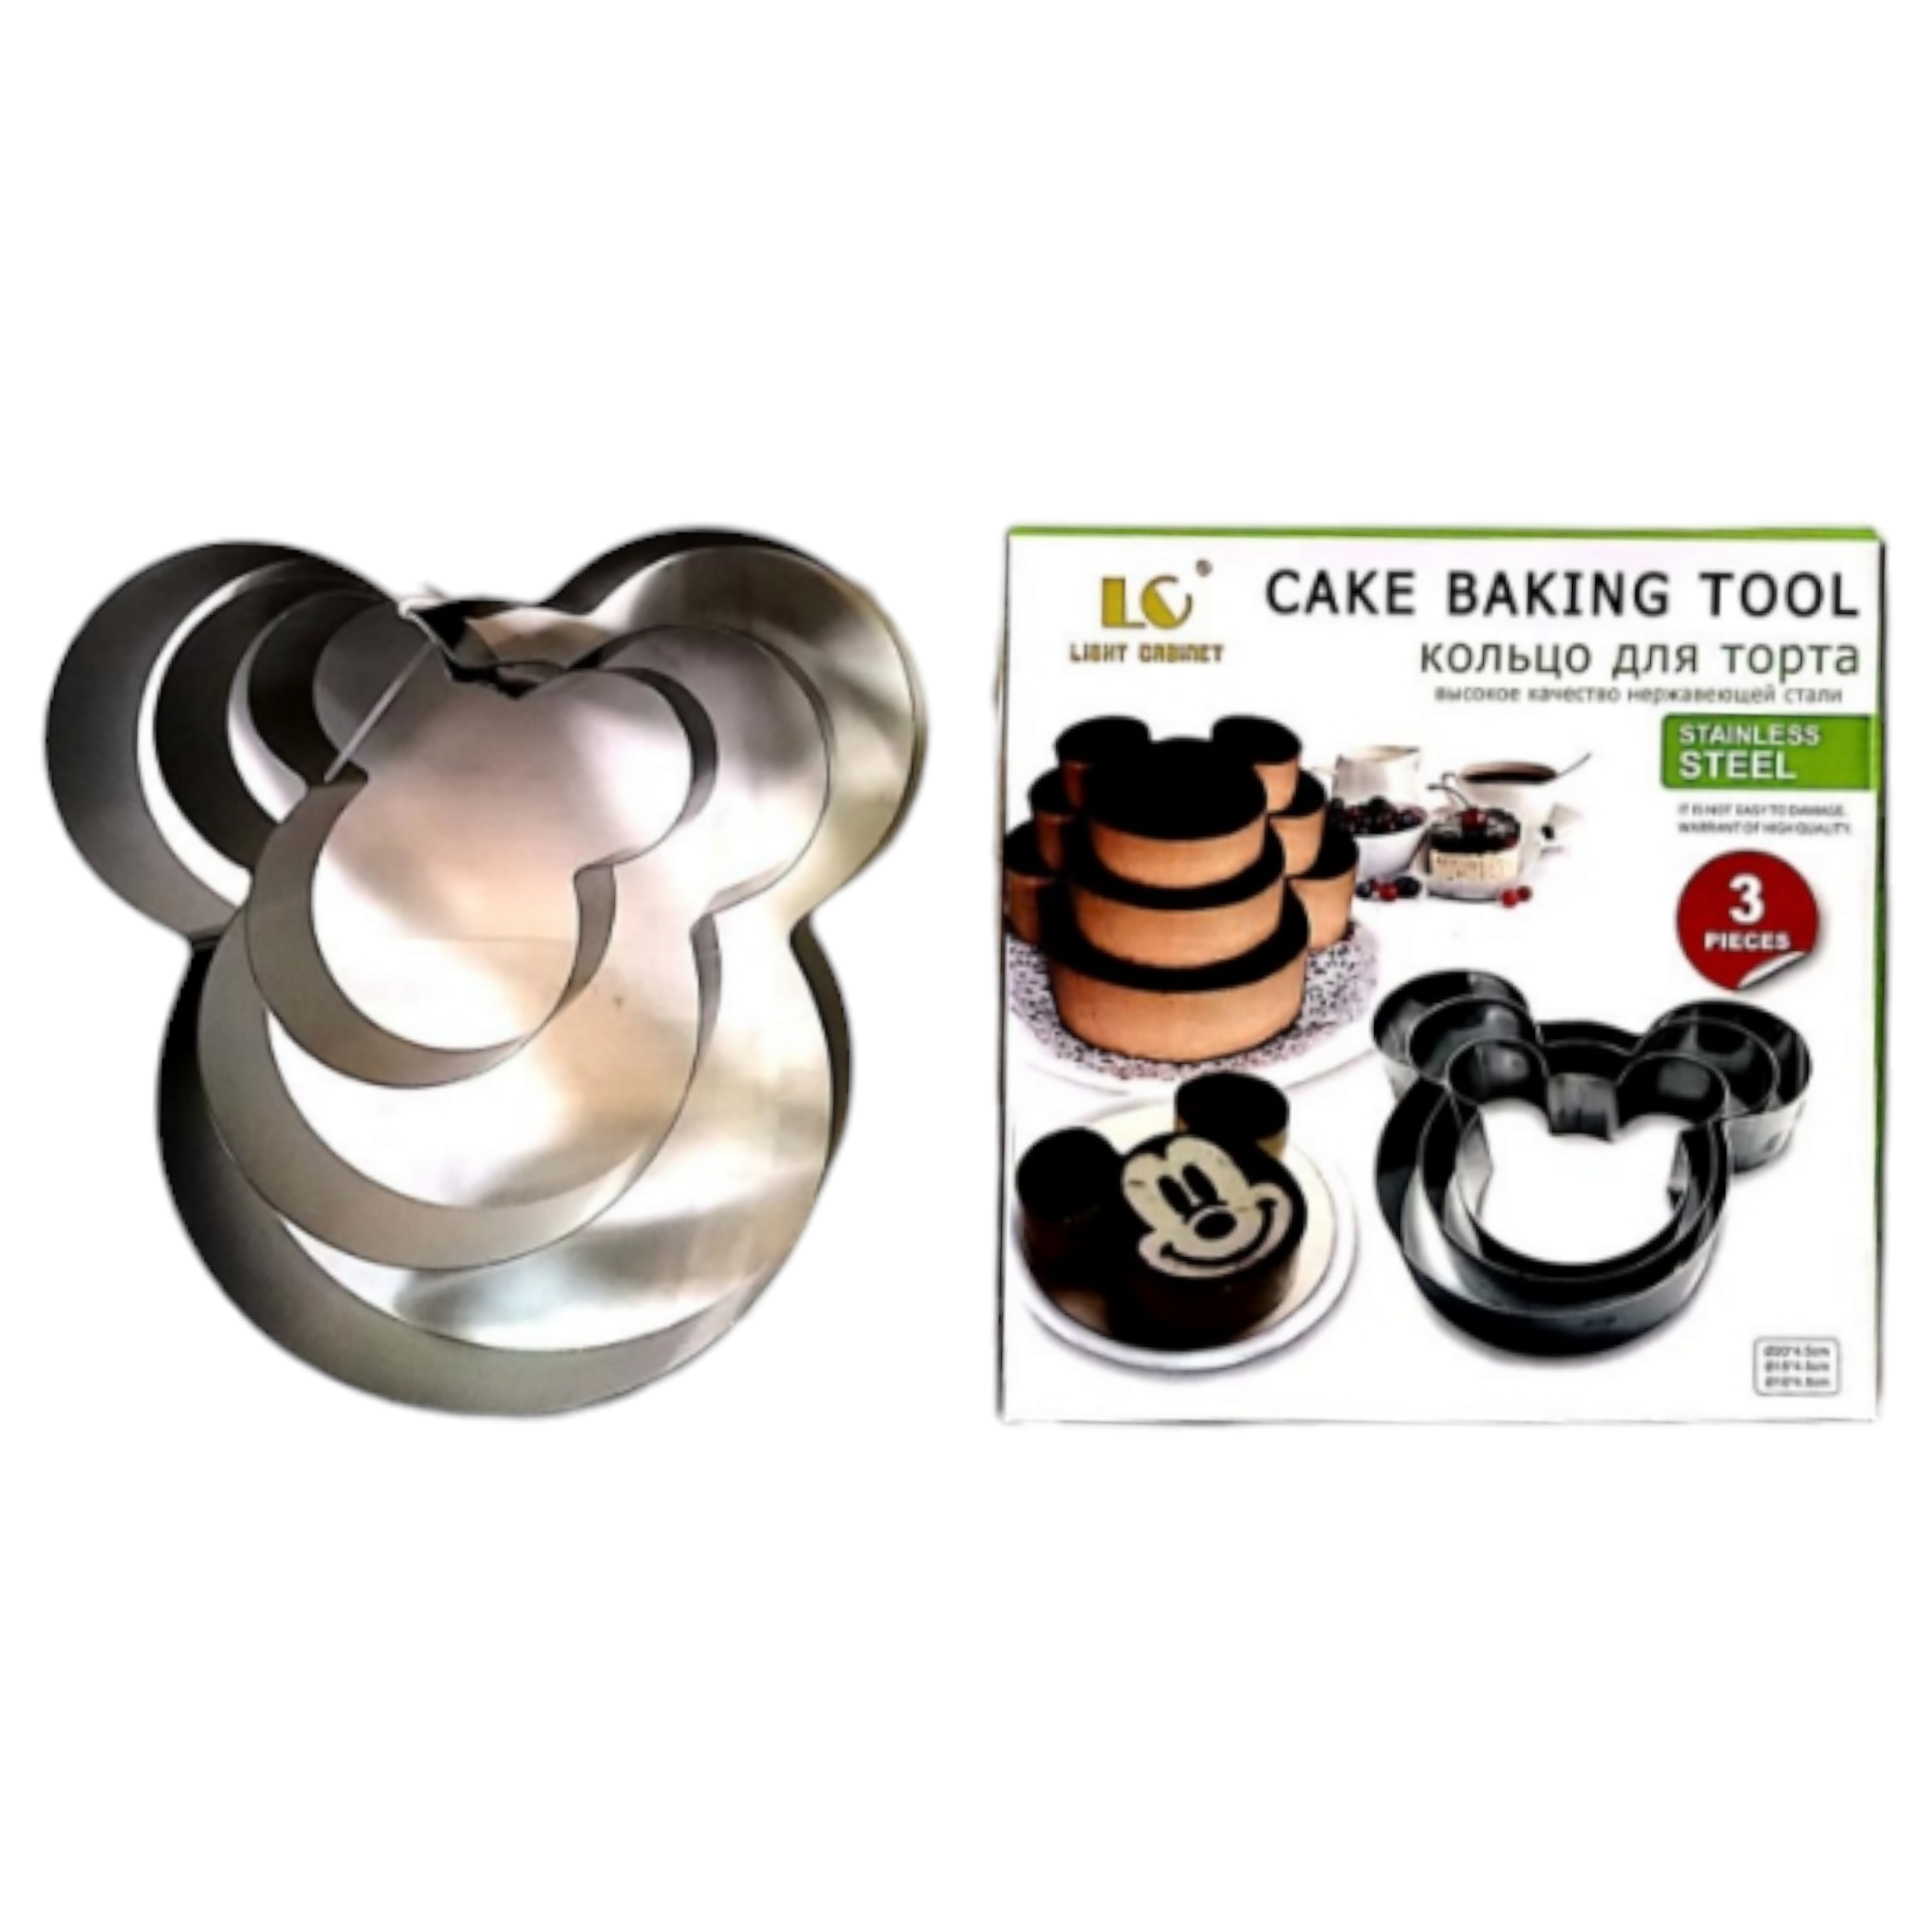 Cake Baking Tool 3pc Set